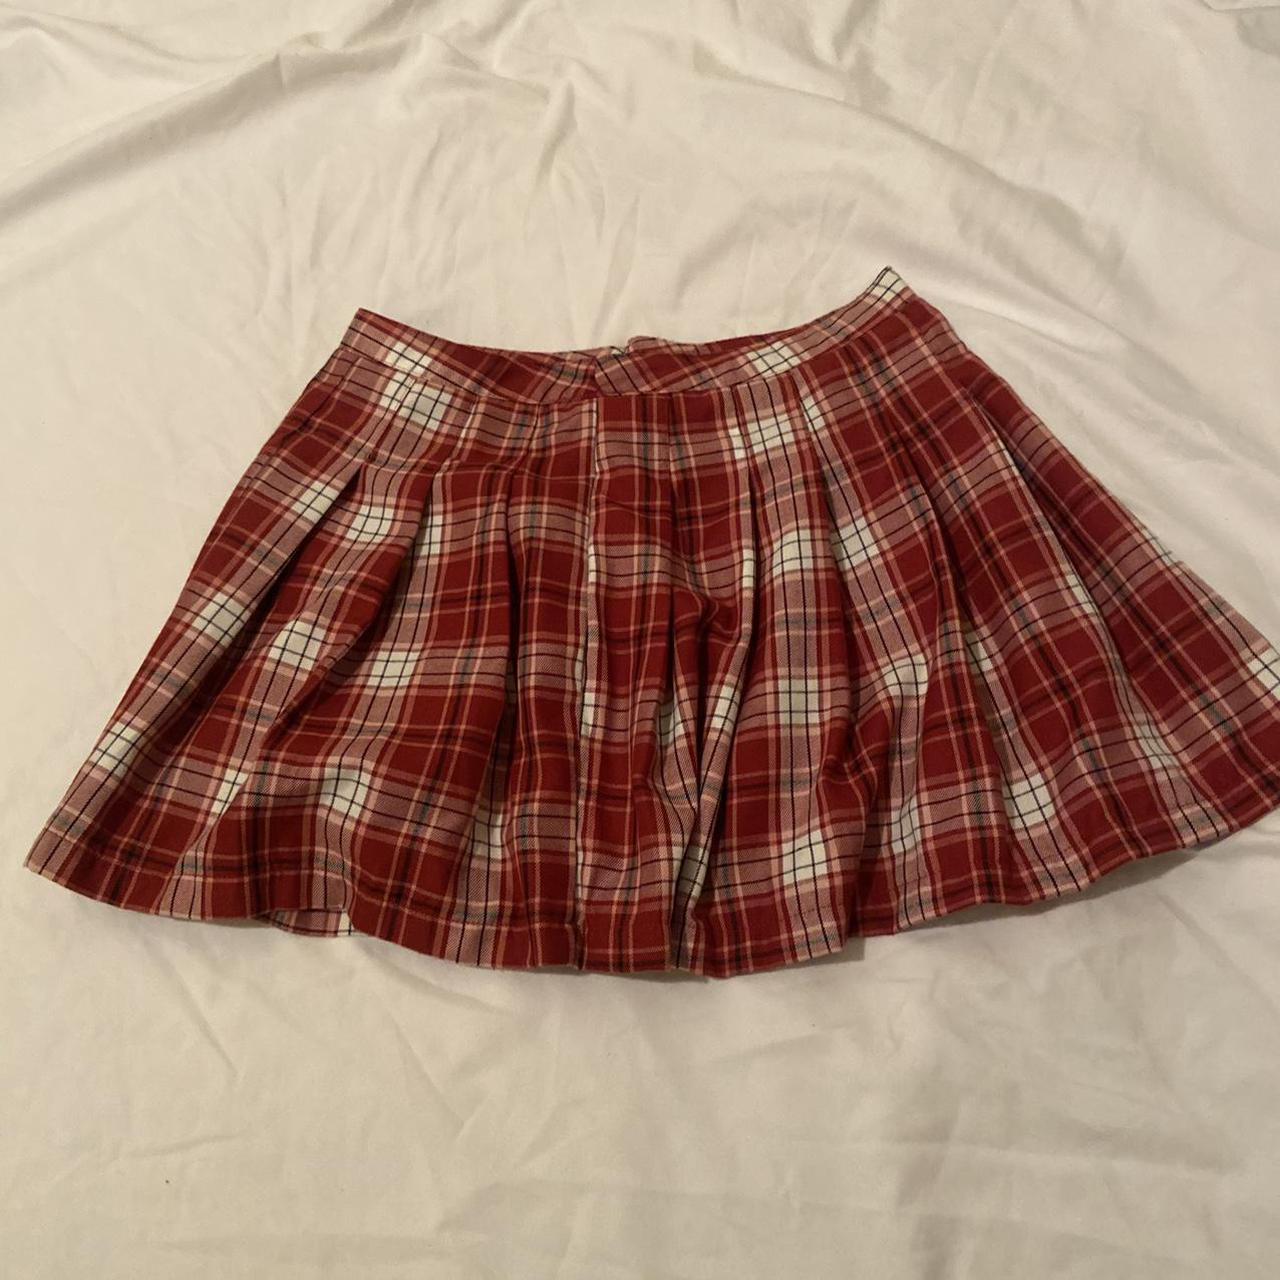 Product Image 2 - High Waist Pleated Skirt ❣️


#pleatedskirt